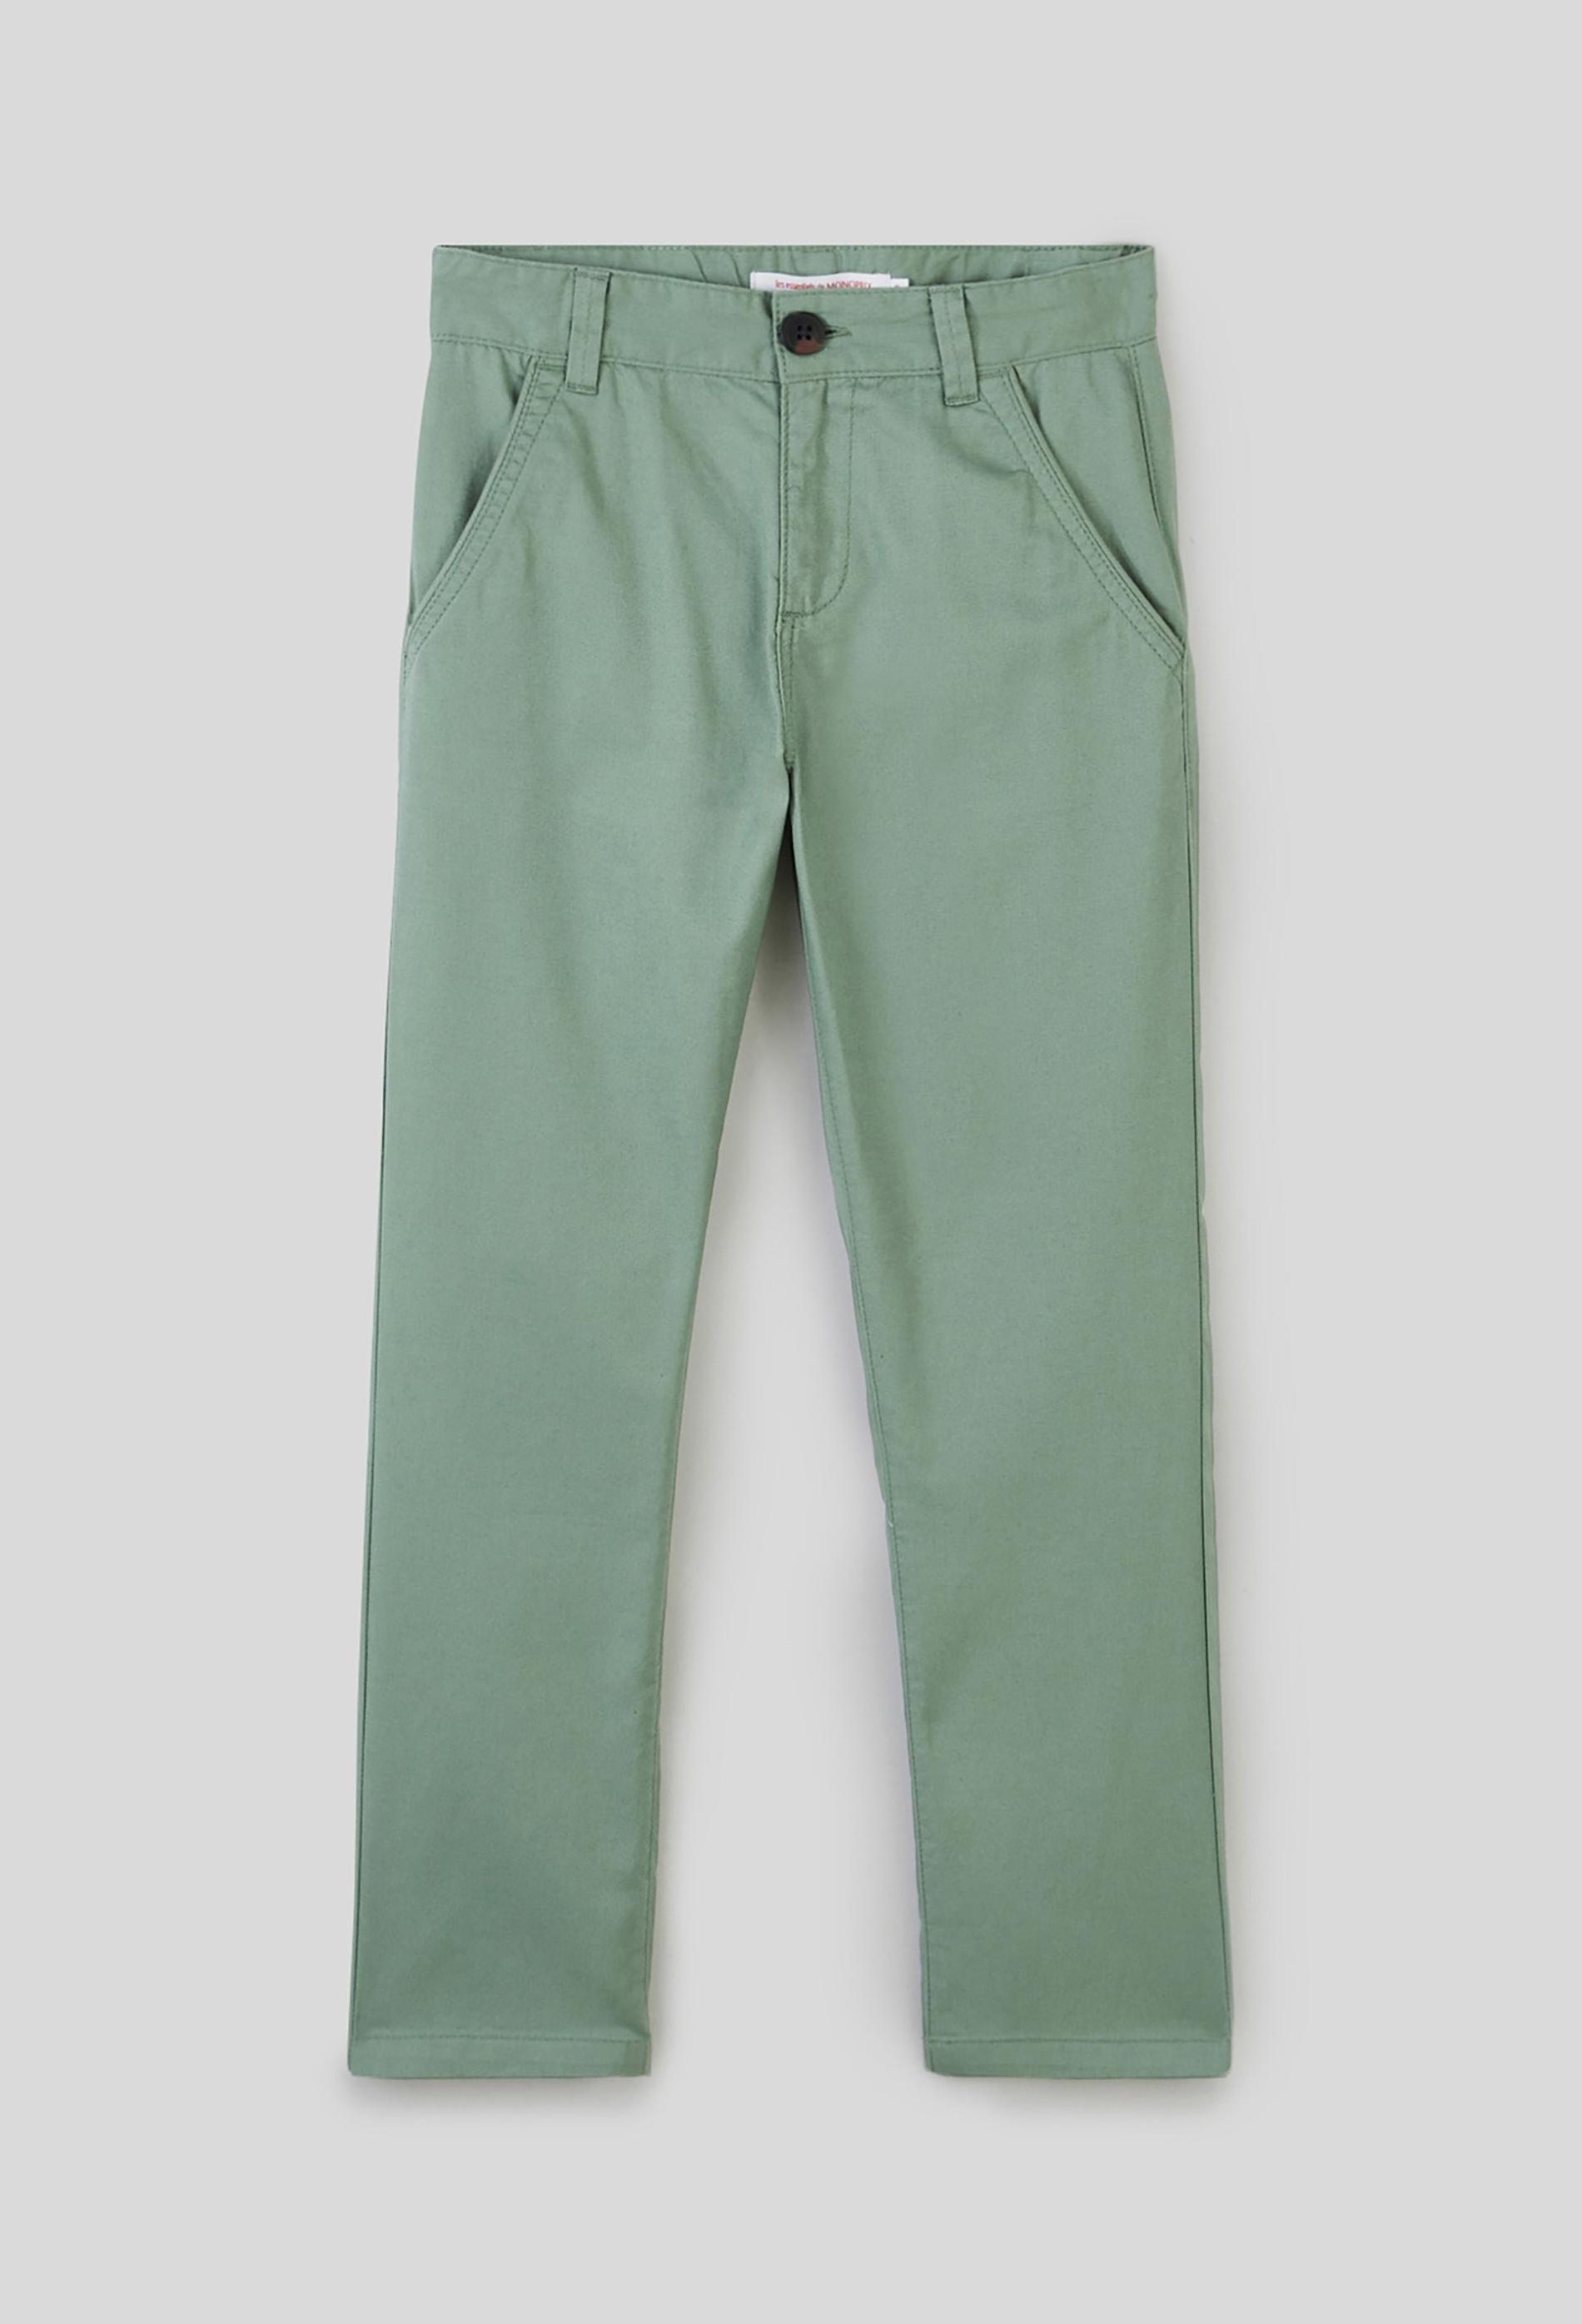 Pantalon léger en coton BIO 10 ans vert